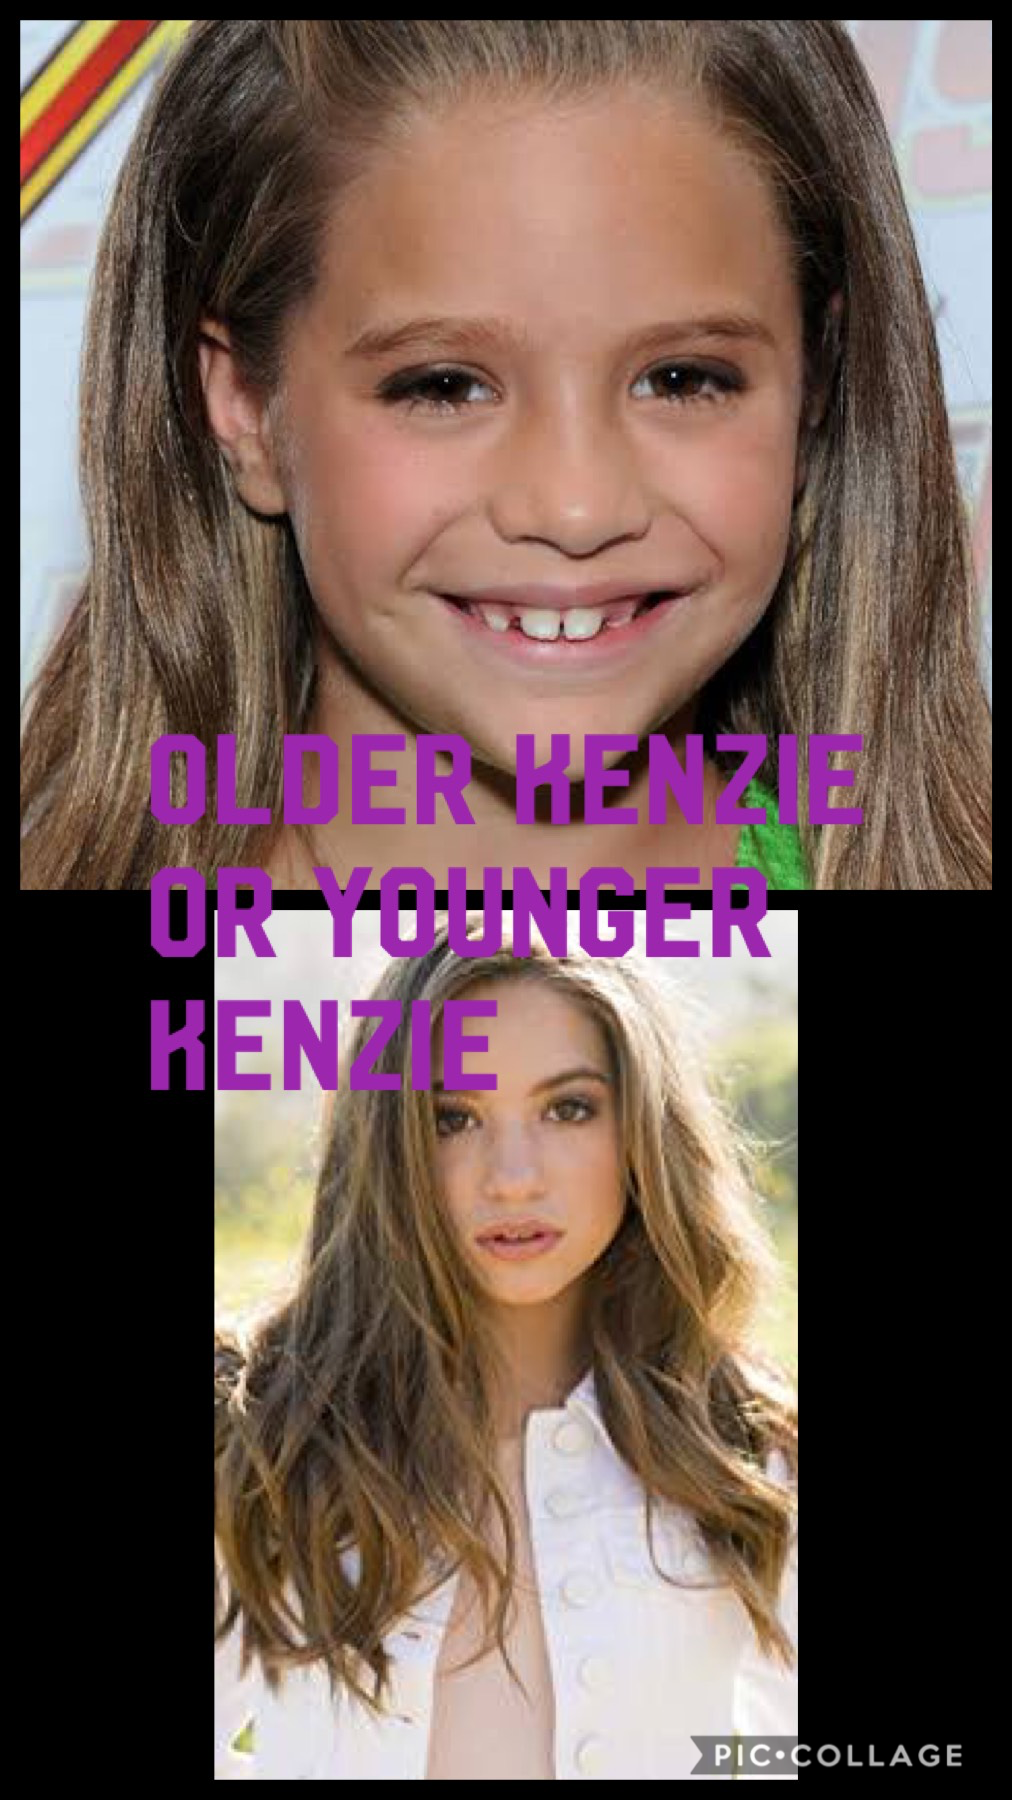 Older or younger Kenzie